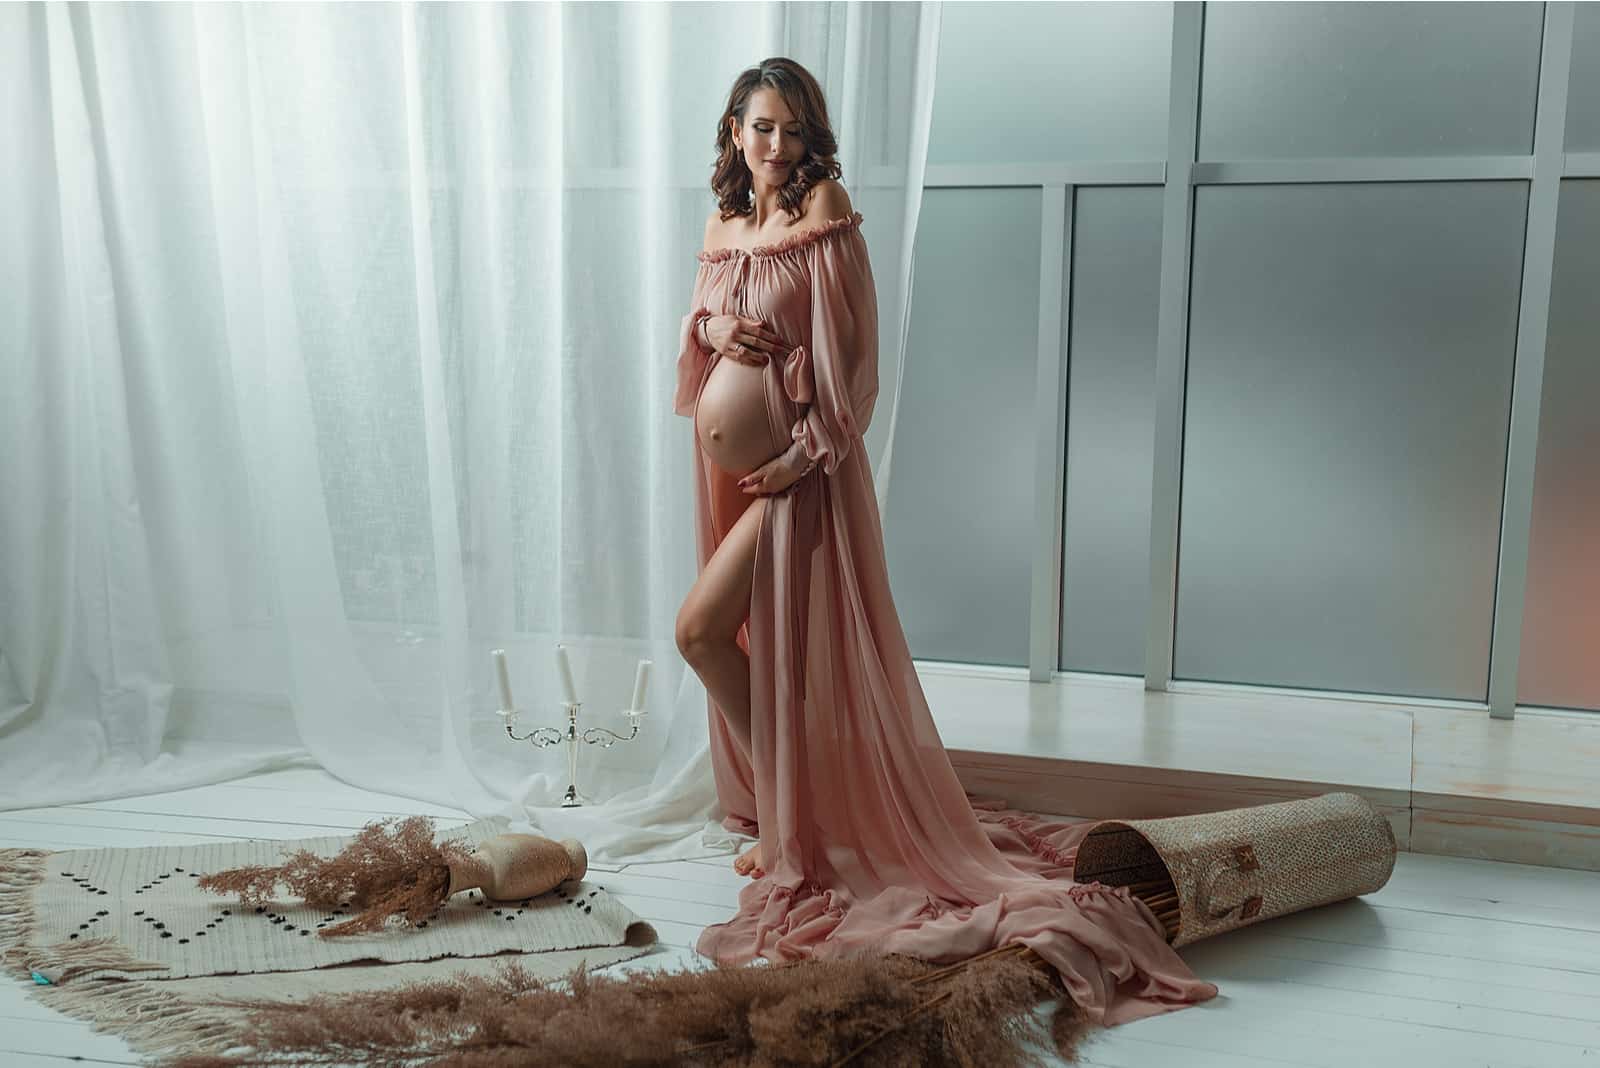 Séance photo de femme enceinte en robe rose